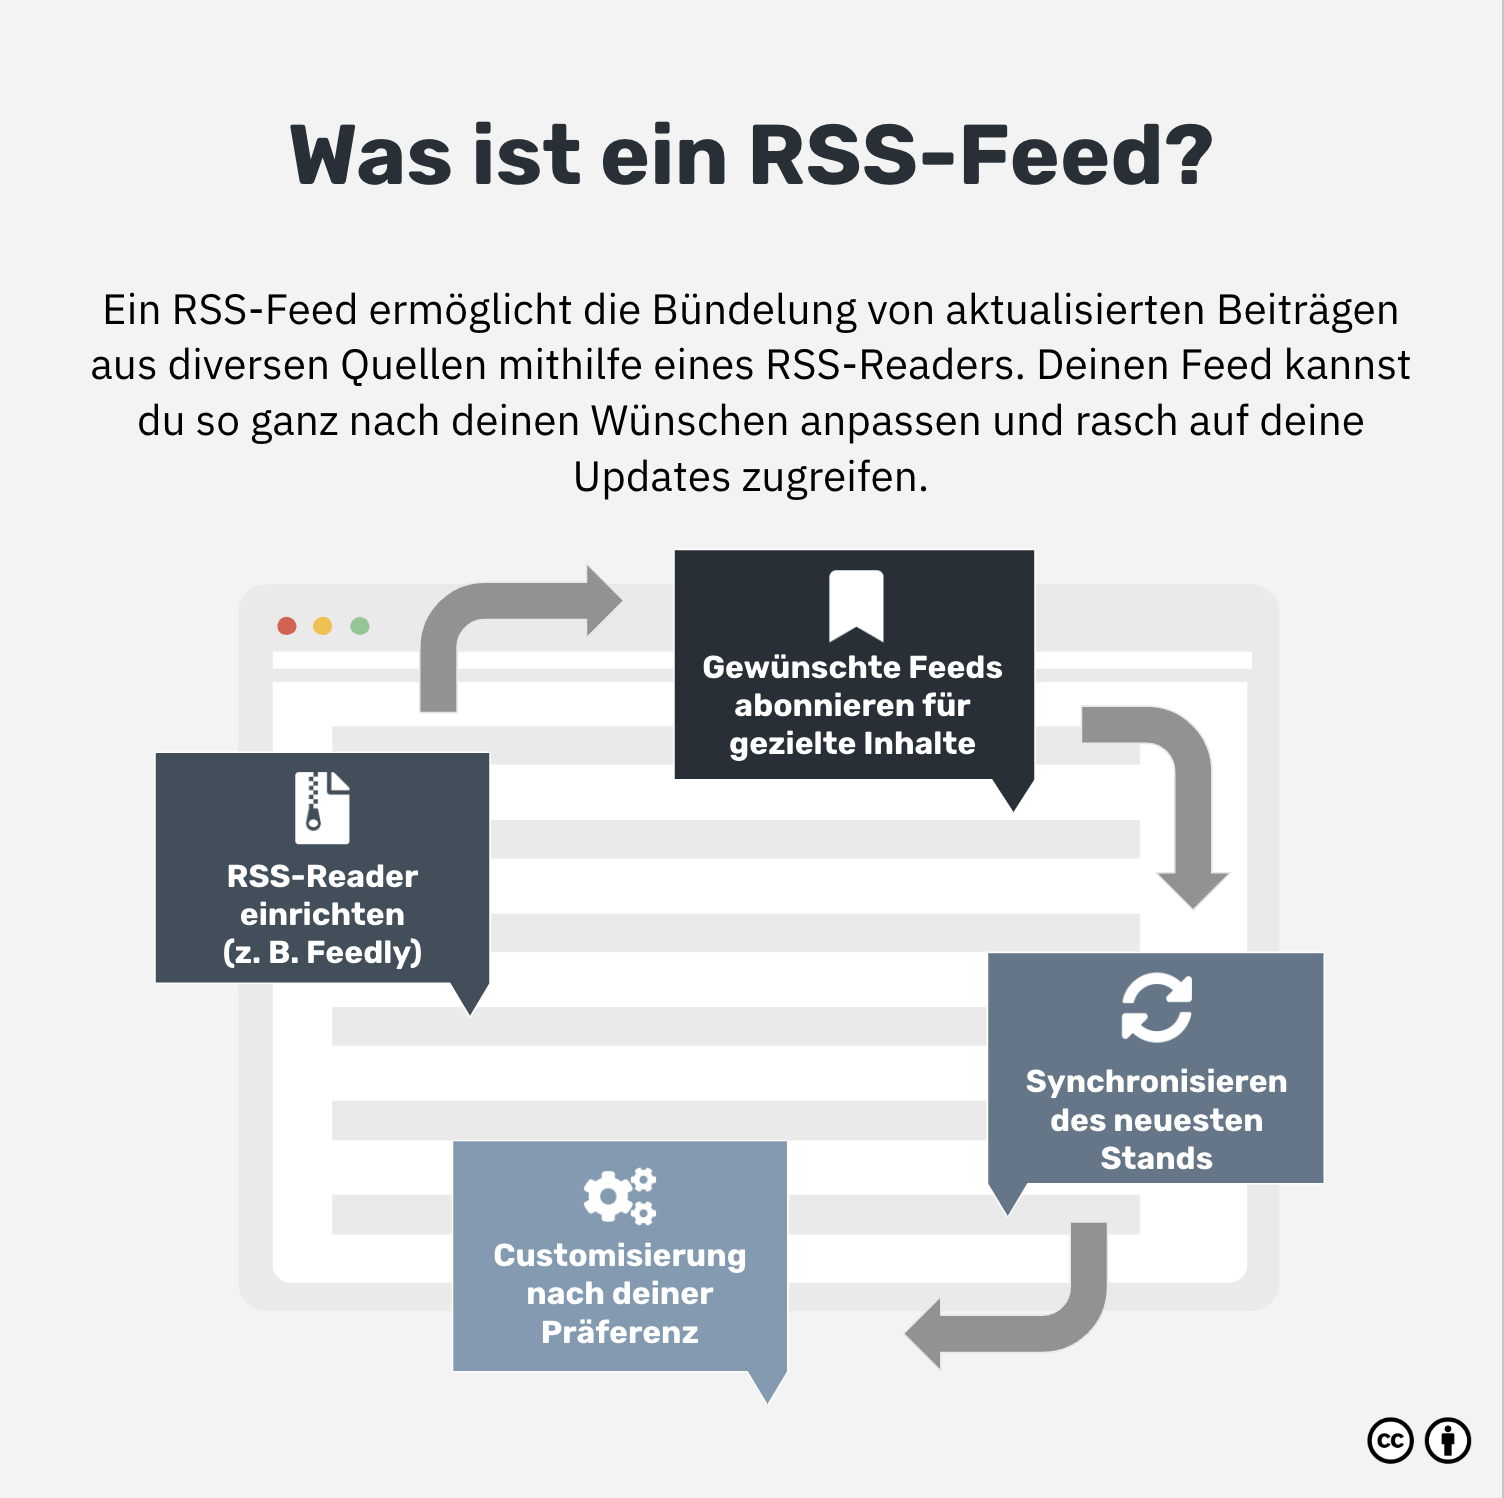 Was ist ein RSS-Feed?